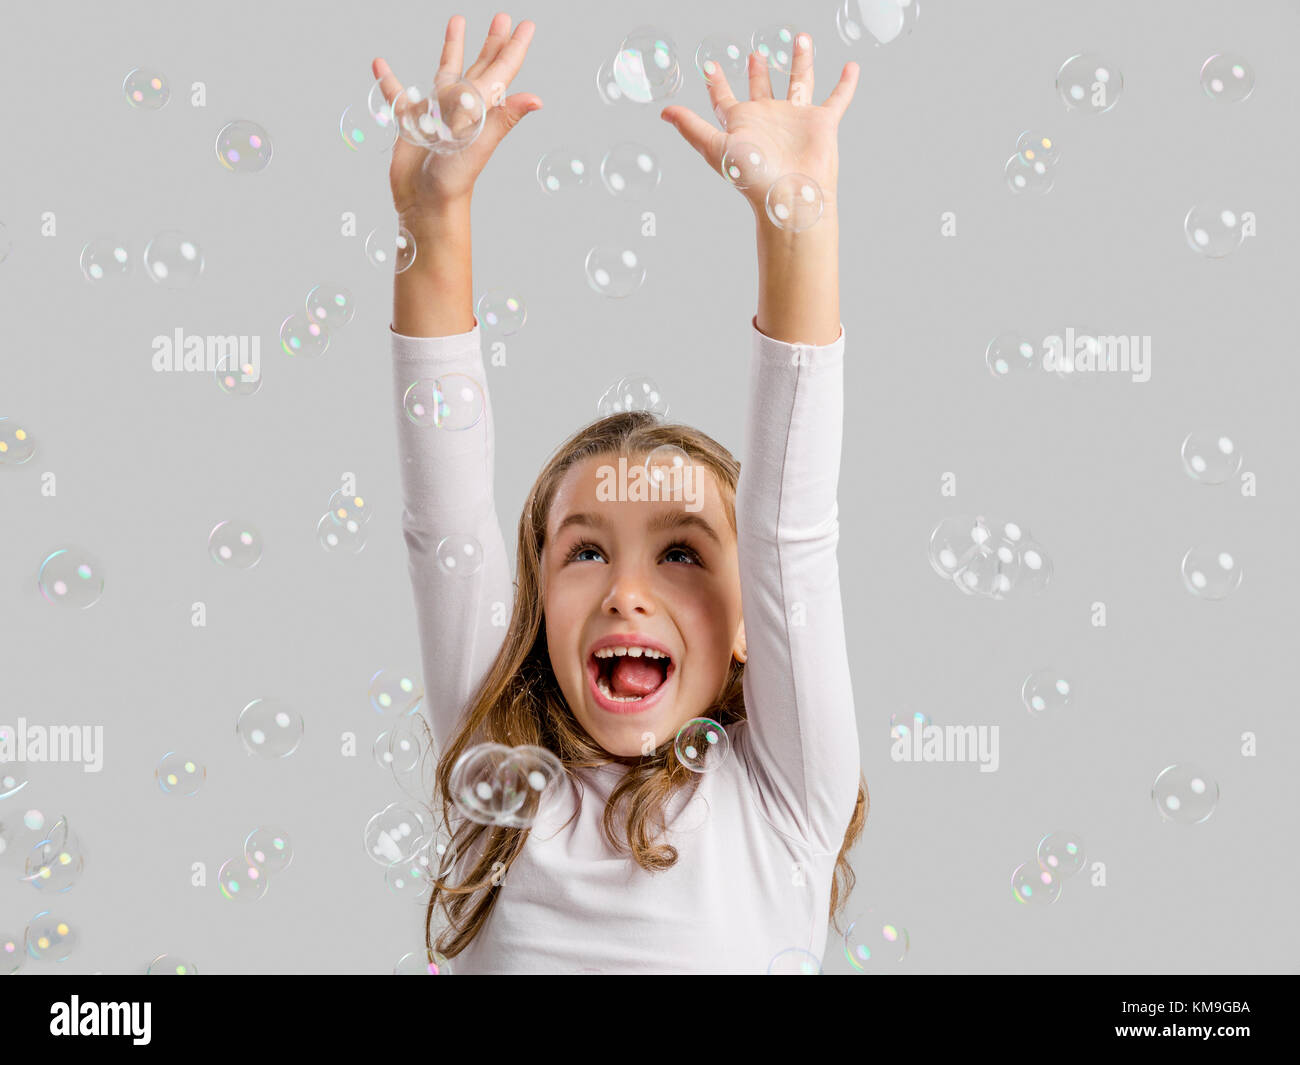 Niños jugando con burbujas fotografías e imágenes de alta resolución -  Página 4 - Alamy